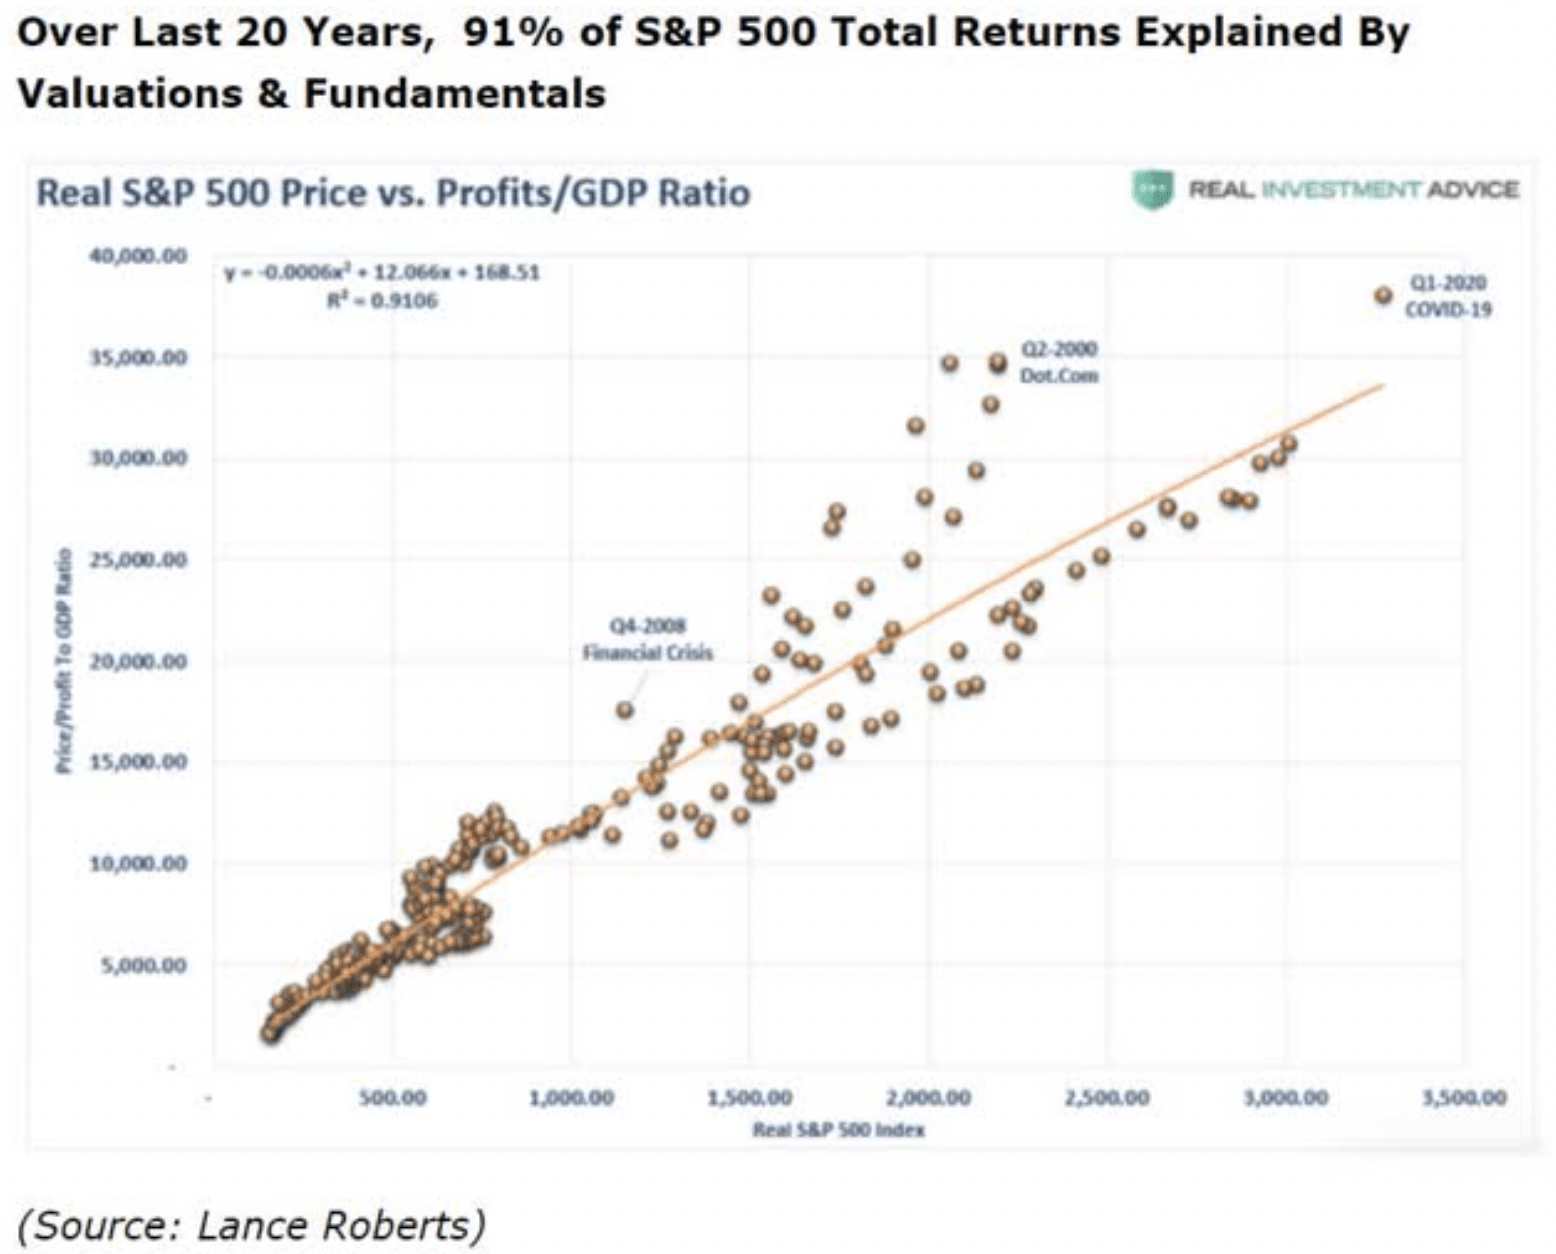 S&P 500 Total Returns